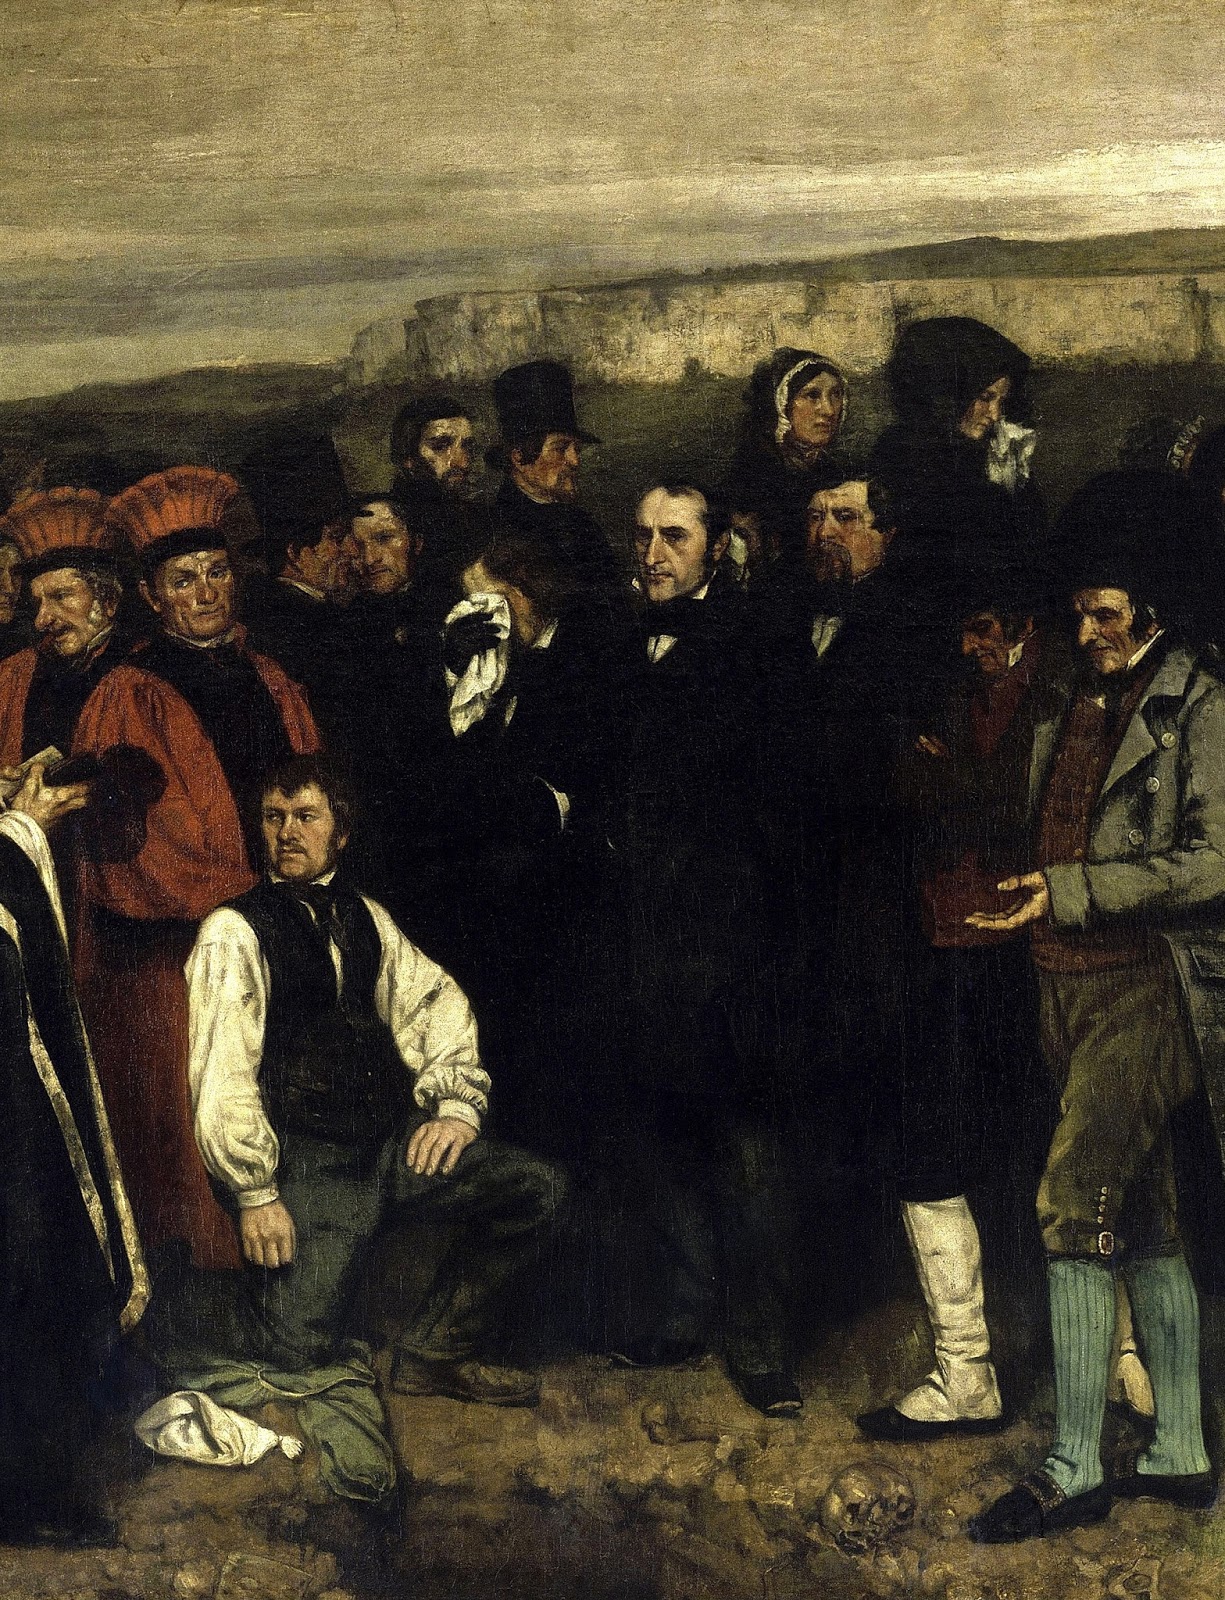 Курбе похороны в орнане. Курбе похороны в Орнане картина. Курбе, «похороны в Орнане», 1849—1850.